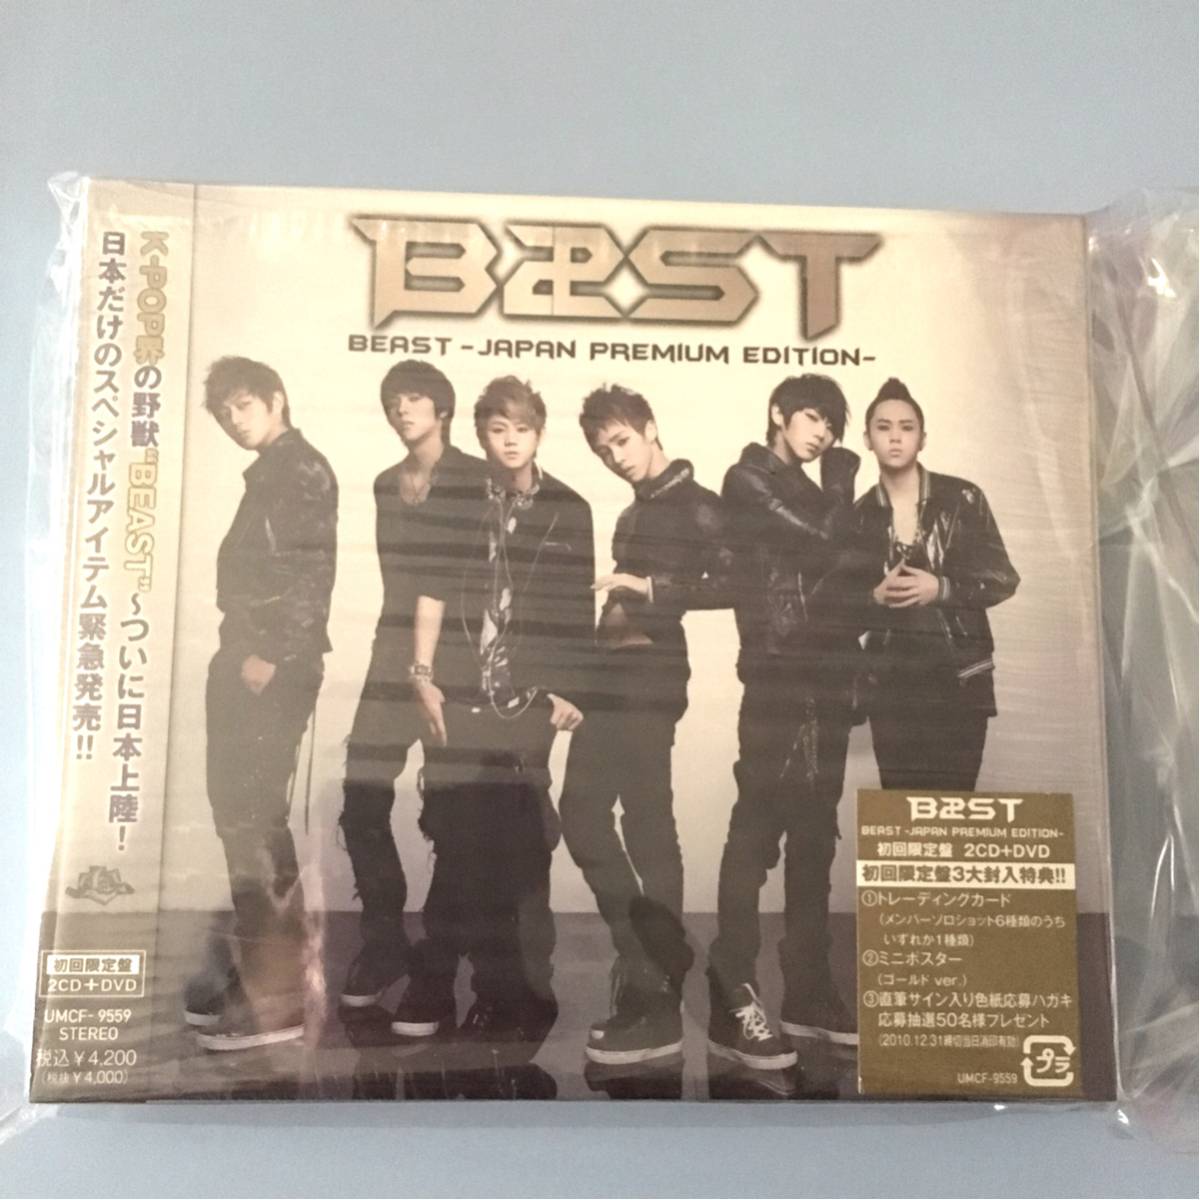 Japan Edition CD DVD ☆ Japan Premium Edition ☆ Beast B2St Основной момент ☆ Корейский альбом корейского идолового альбома первого издания Dujun Gi Gwang